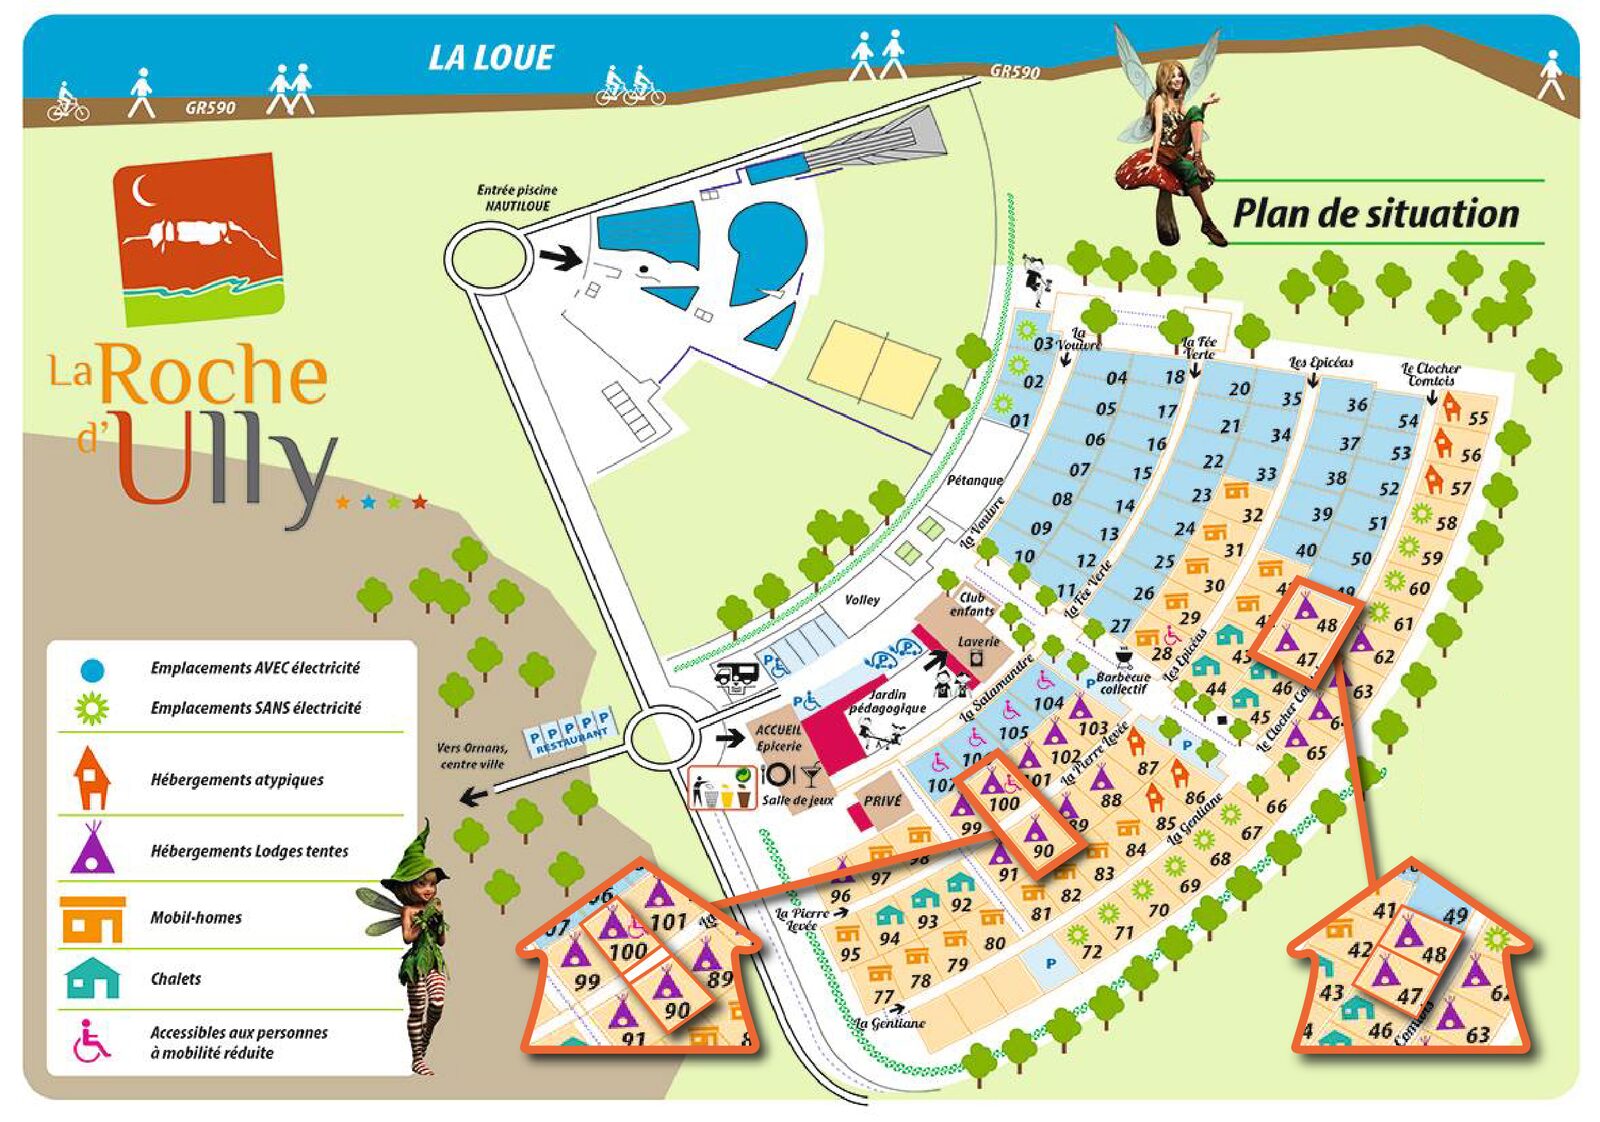 Map La Roche d'Ully